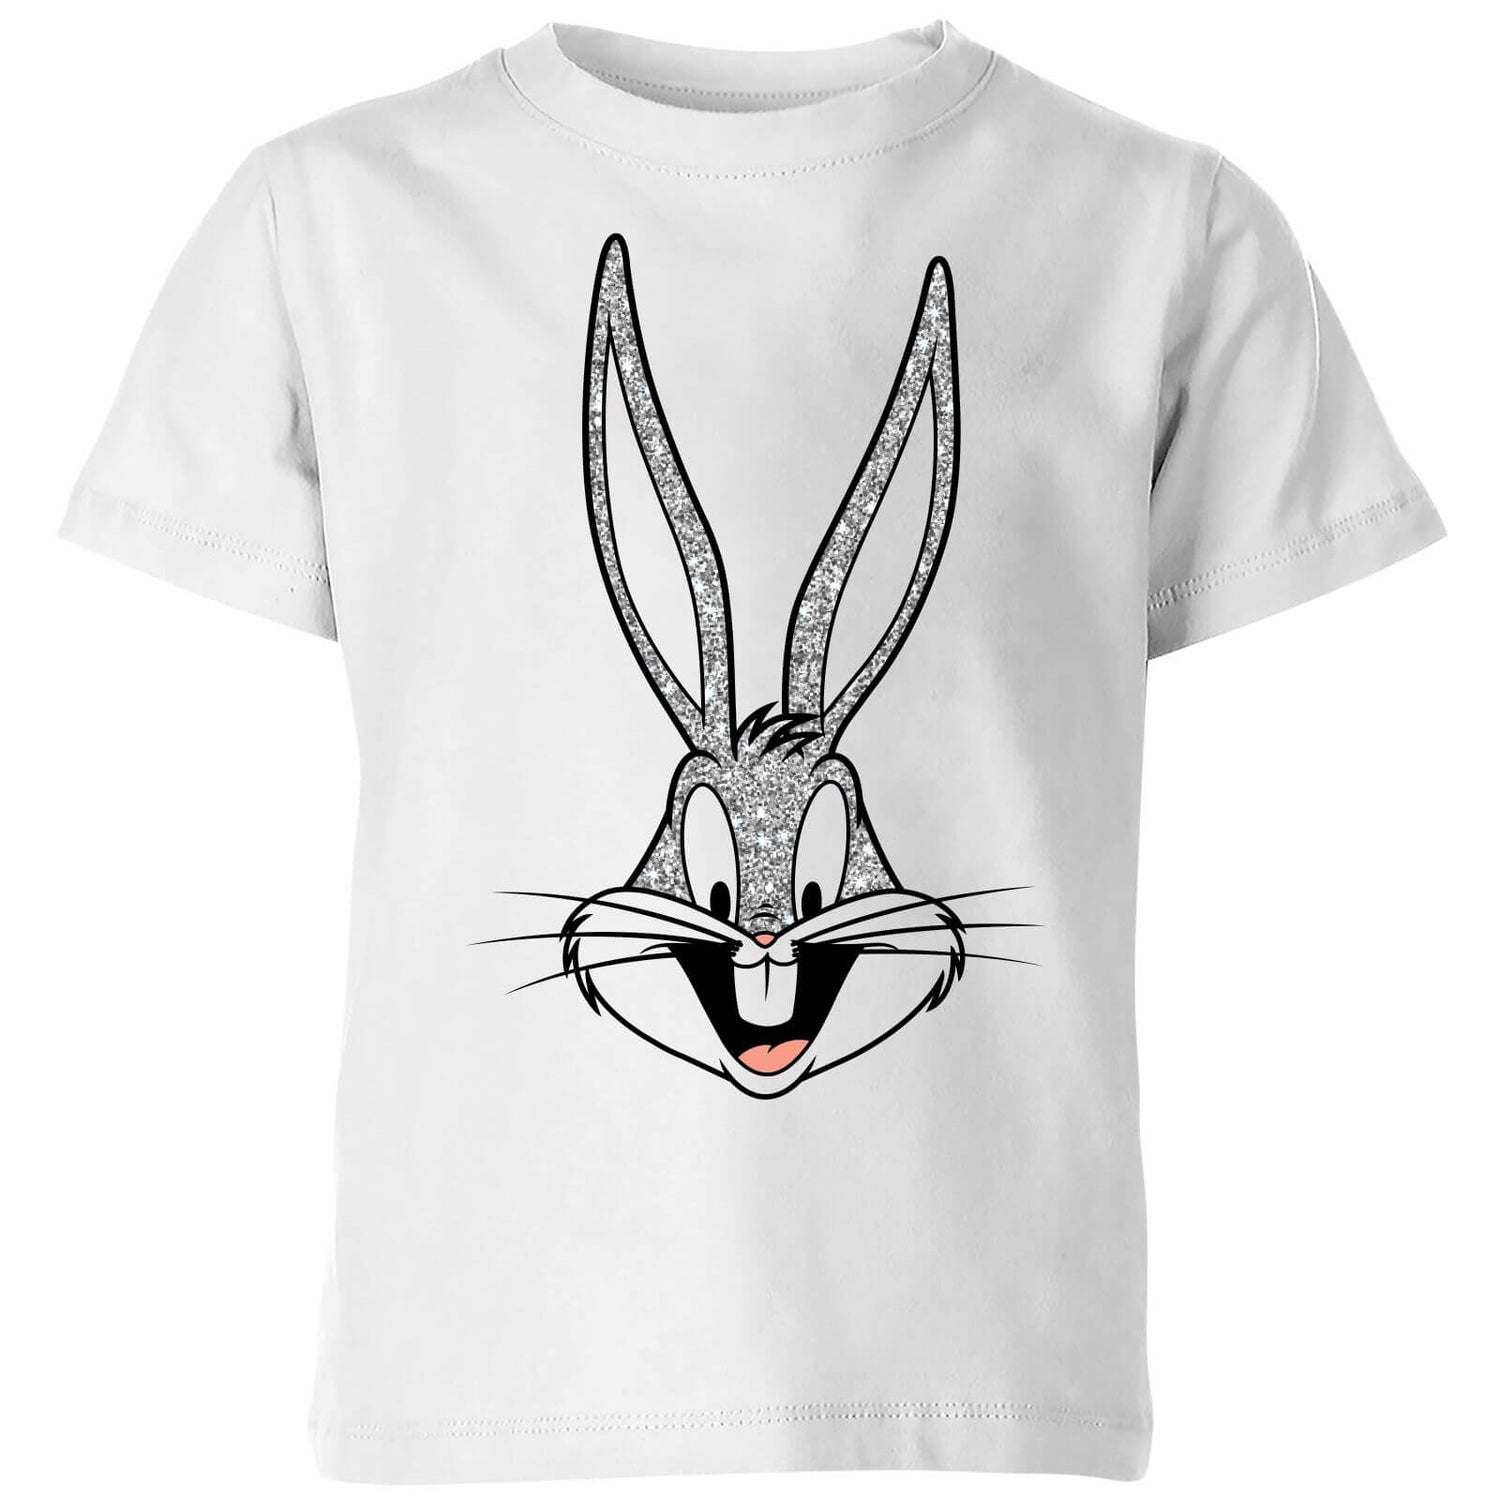 Looney Tunes Bugs Bunny Kids' T-Shirt - White Clothing - Zavvi UK